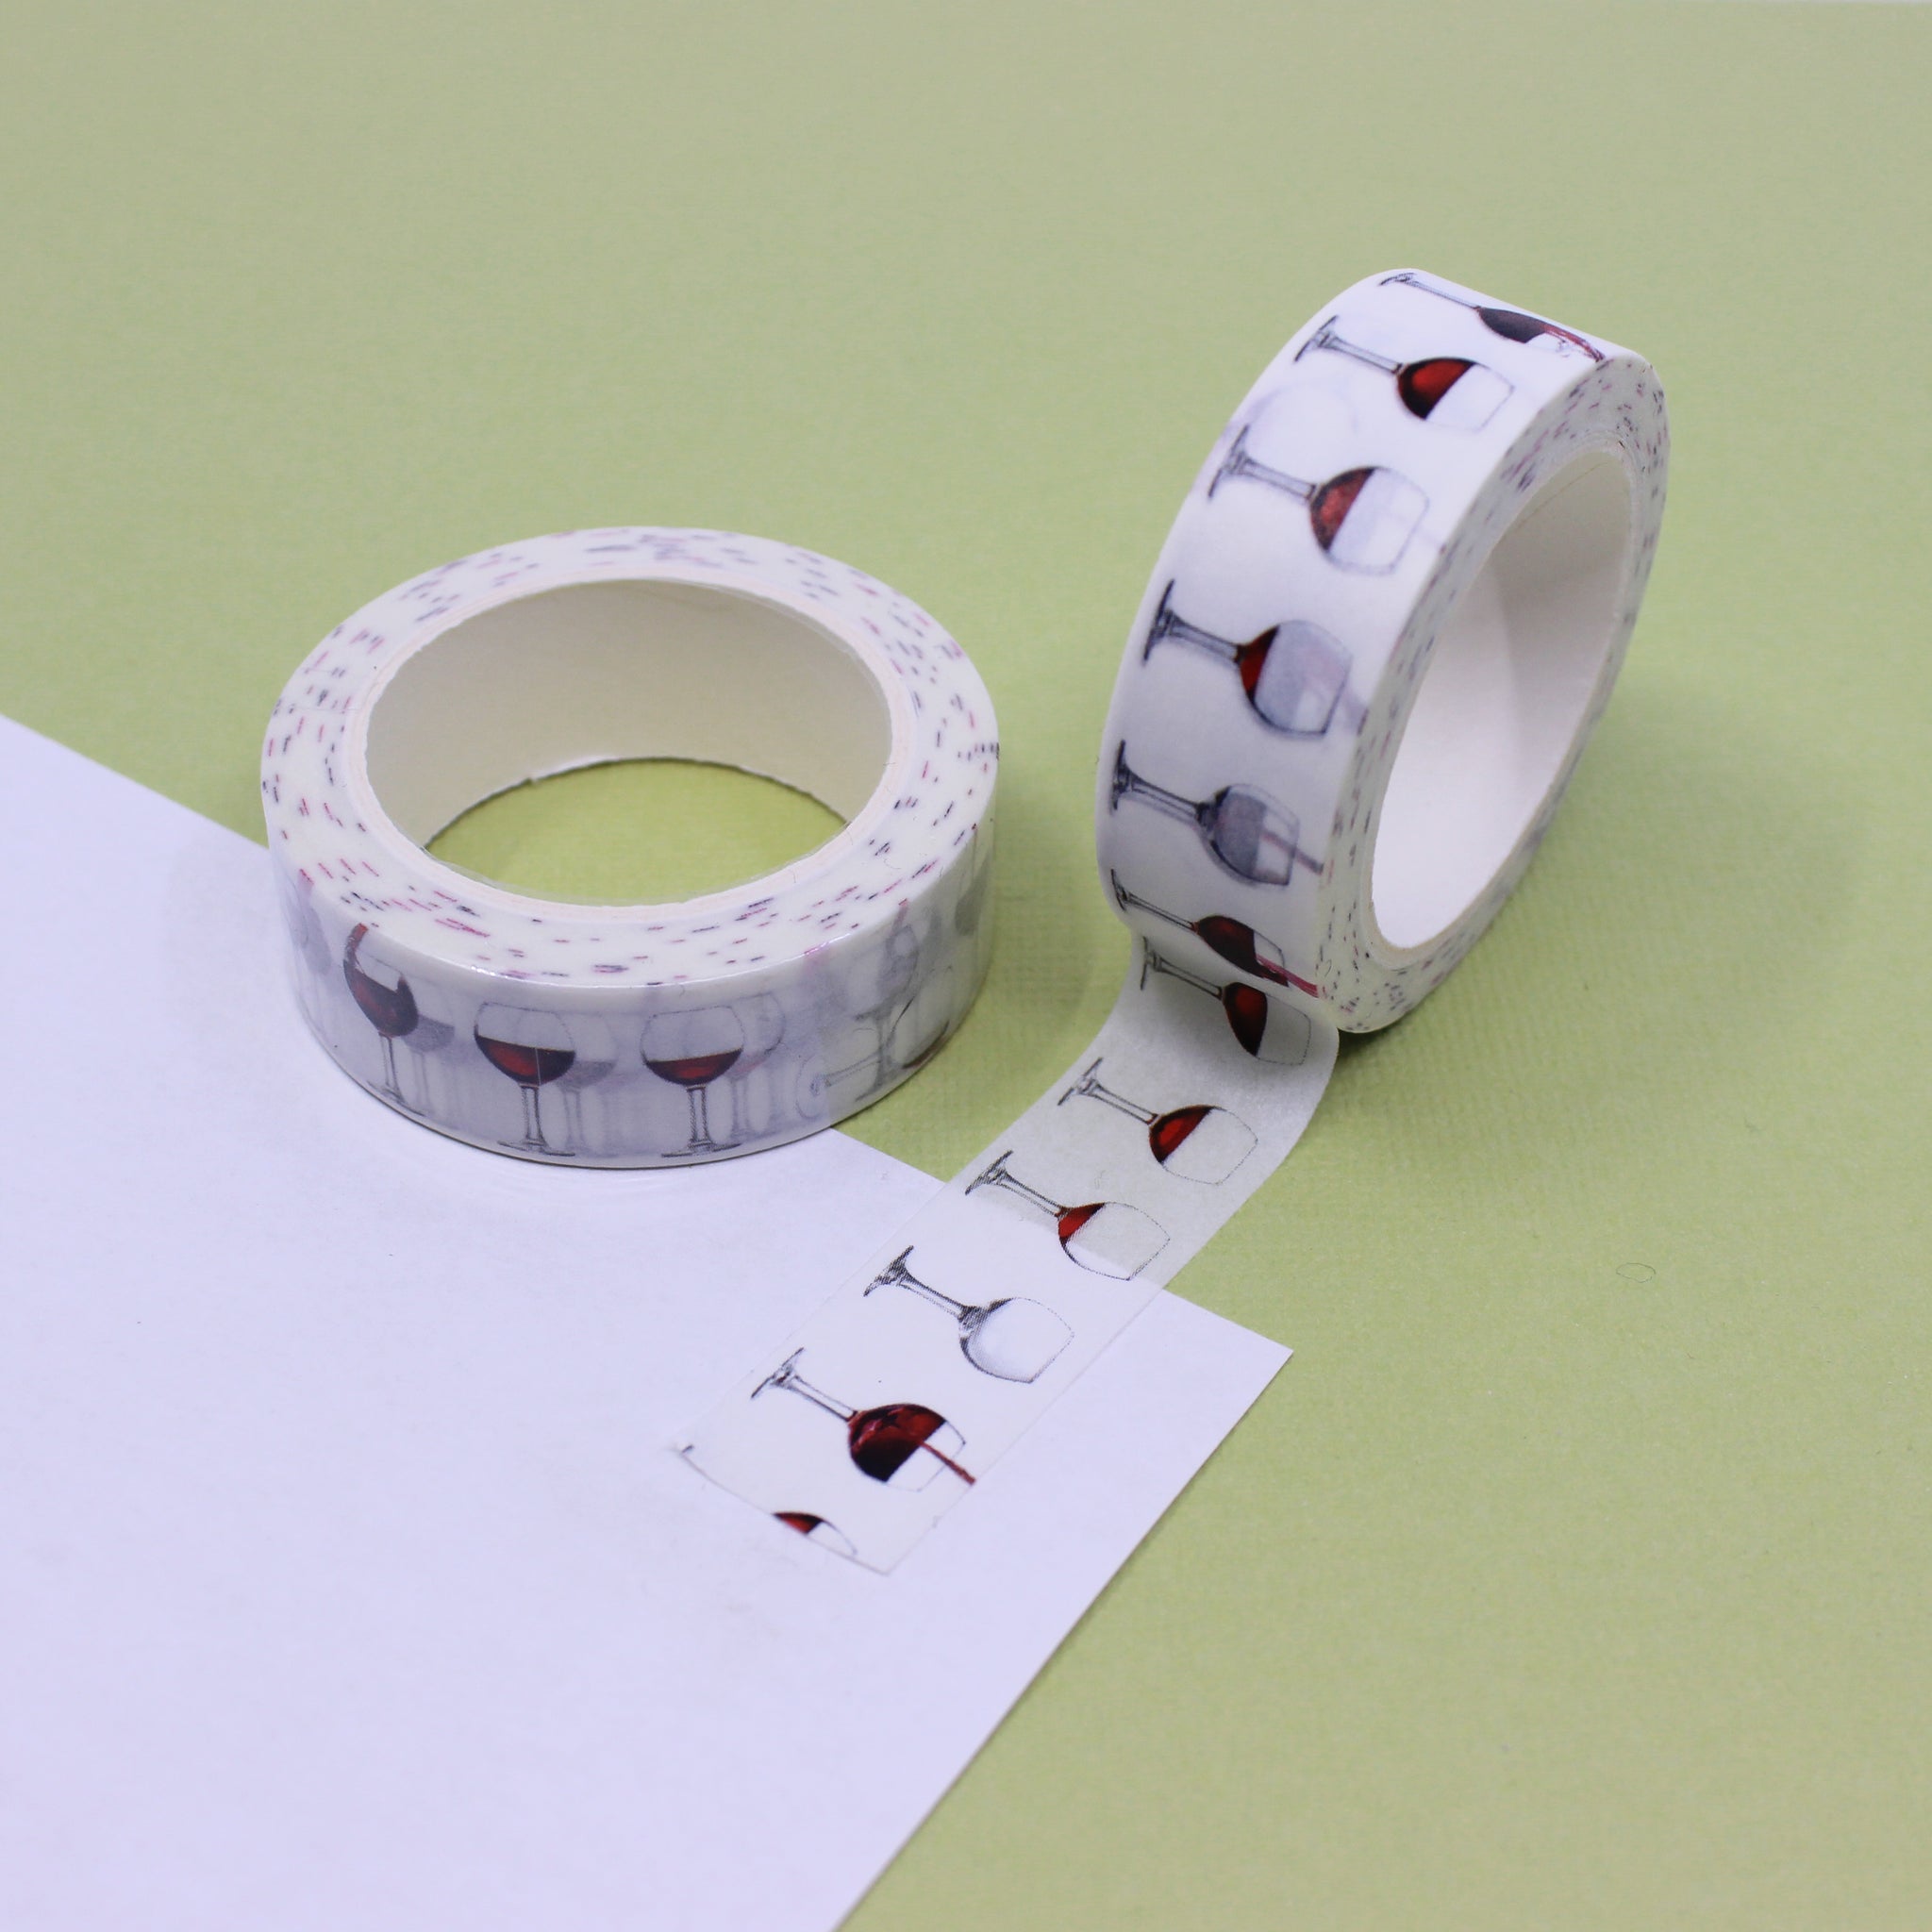 http://www.bbbsupplies.com/cdn/shop/products/journaling-washi-tape-bbb-supplies-craft-shop-102.jpg?v=1671971919&width=2048